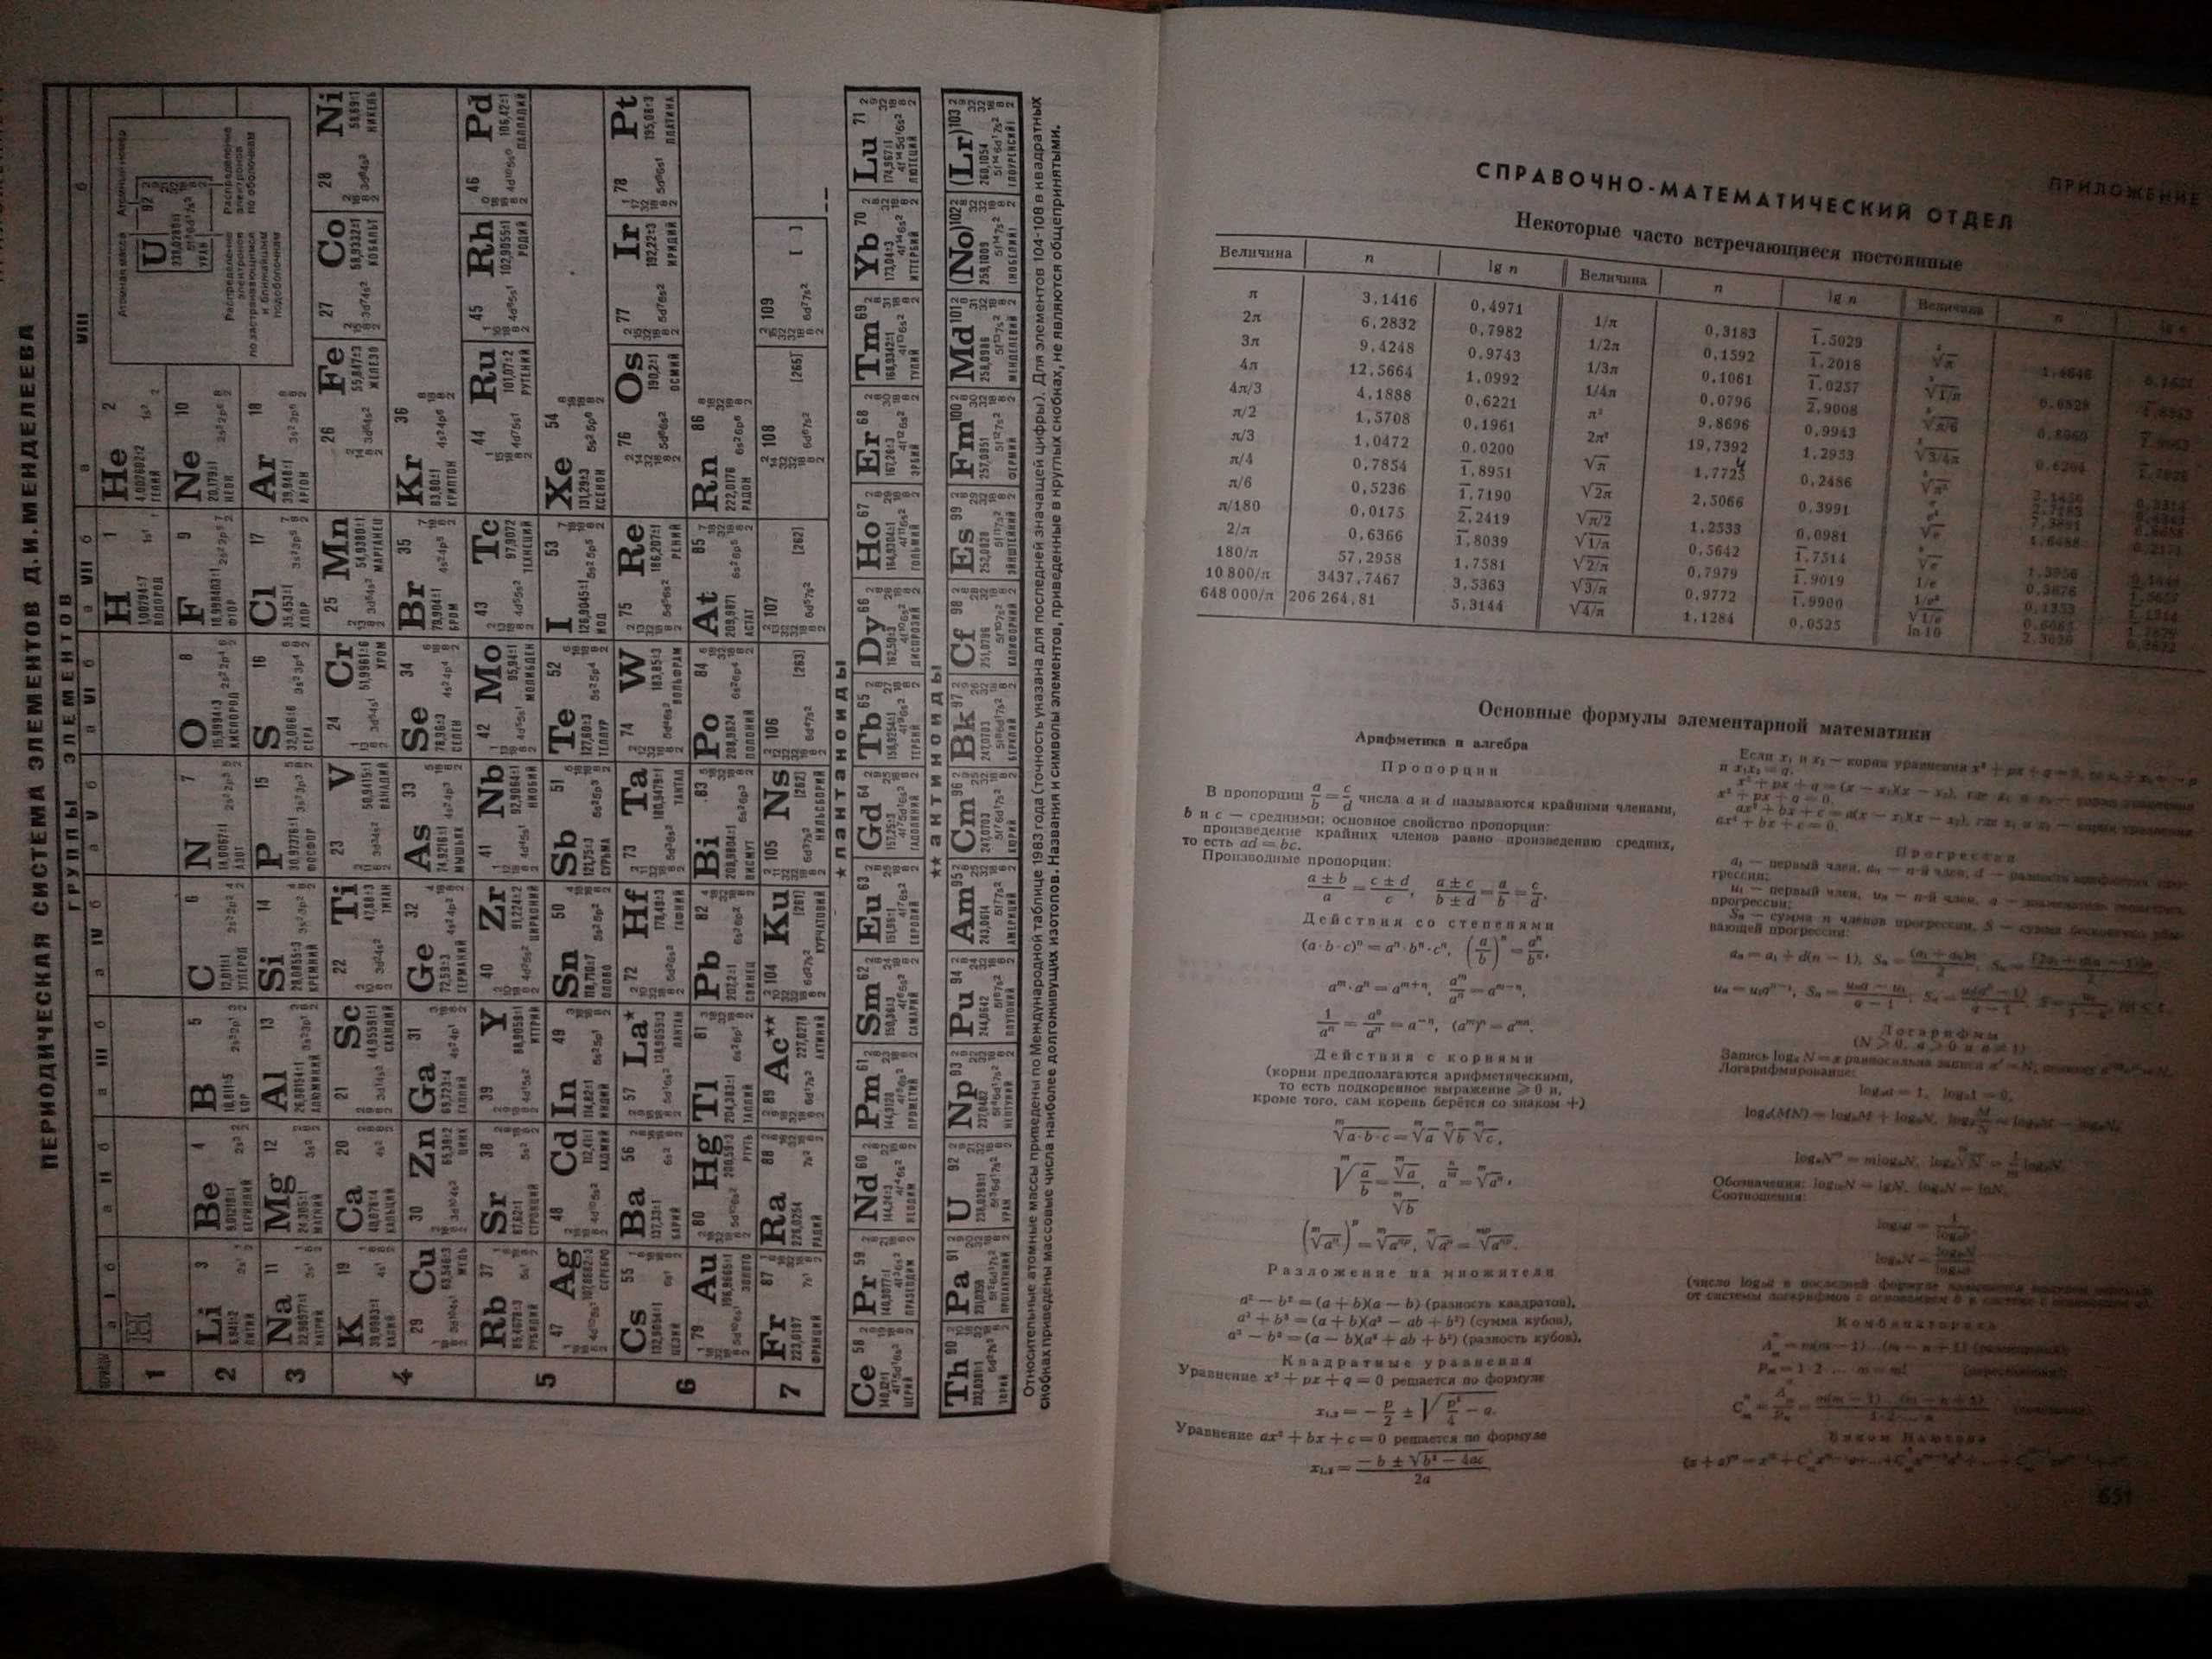 Политехнический словарь. 1989 г. Гл. редактор А.Ю.Ишлинский. 656 стр.